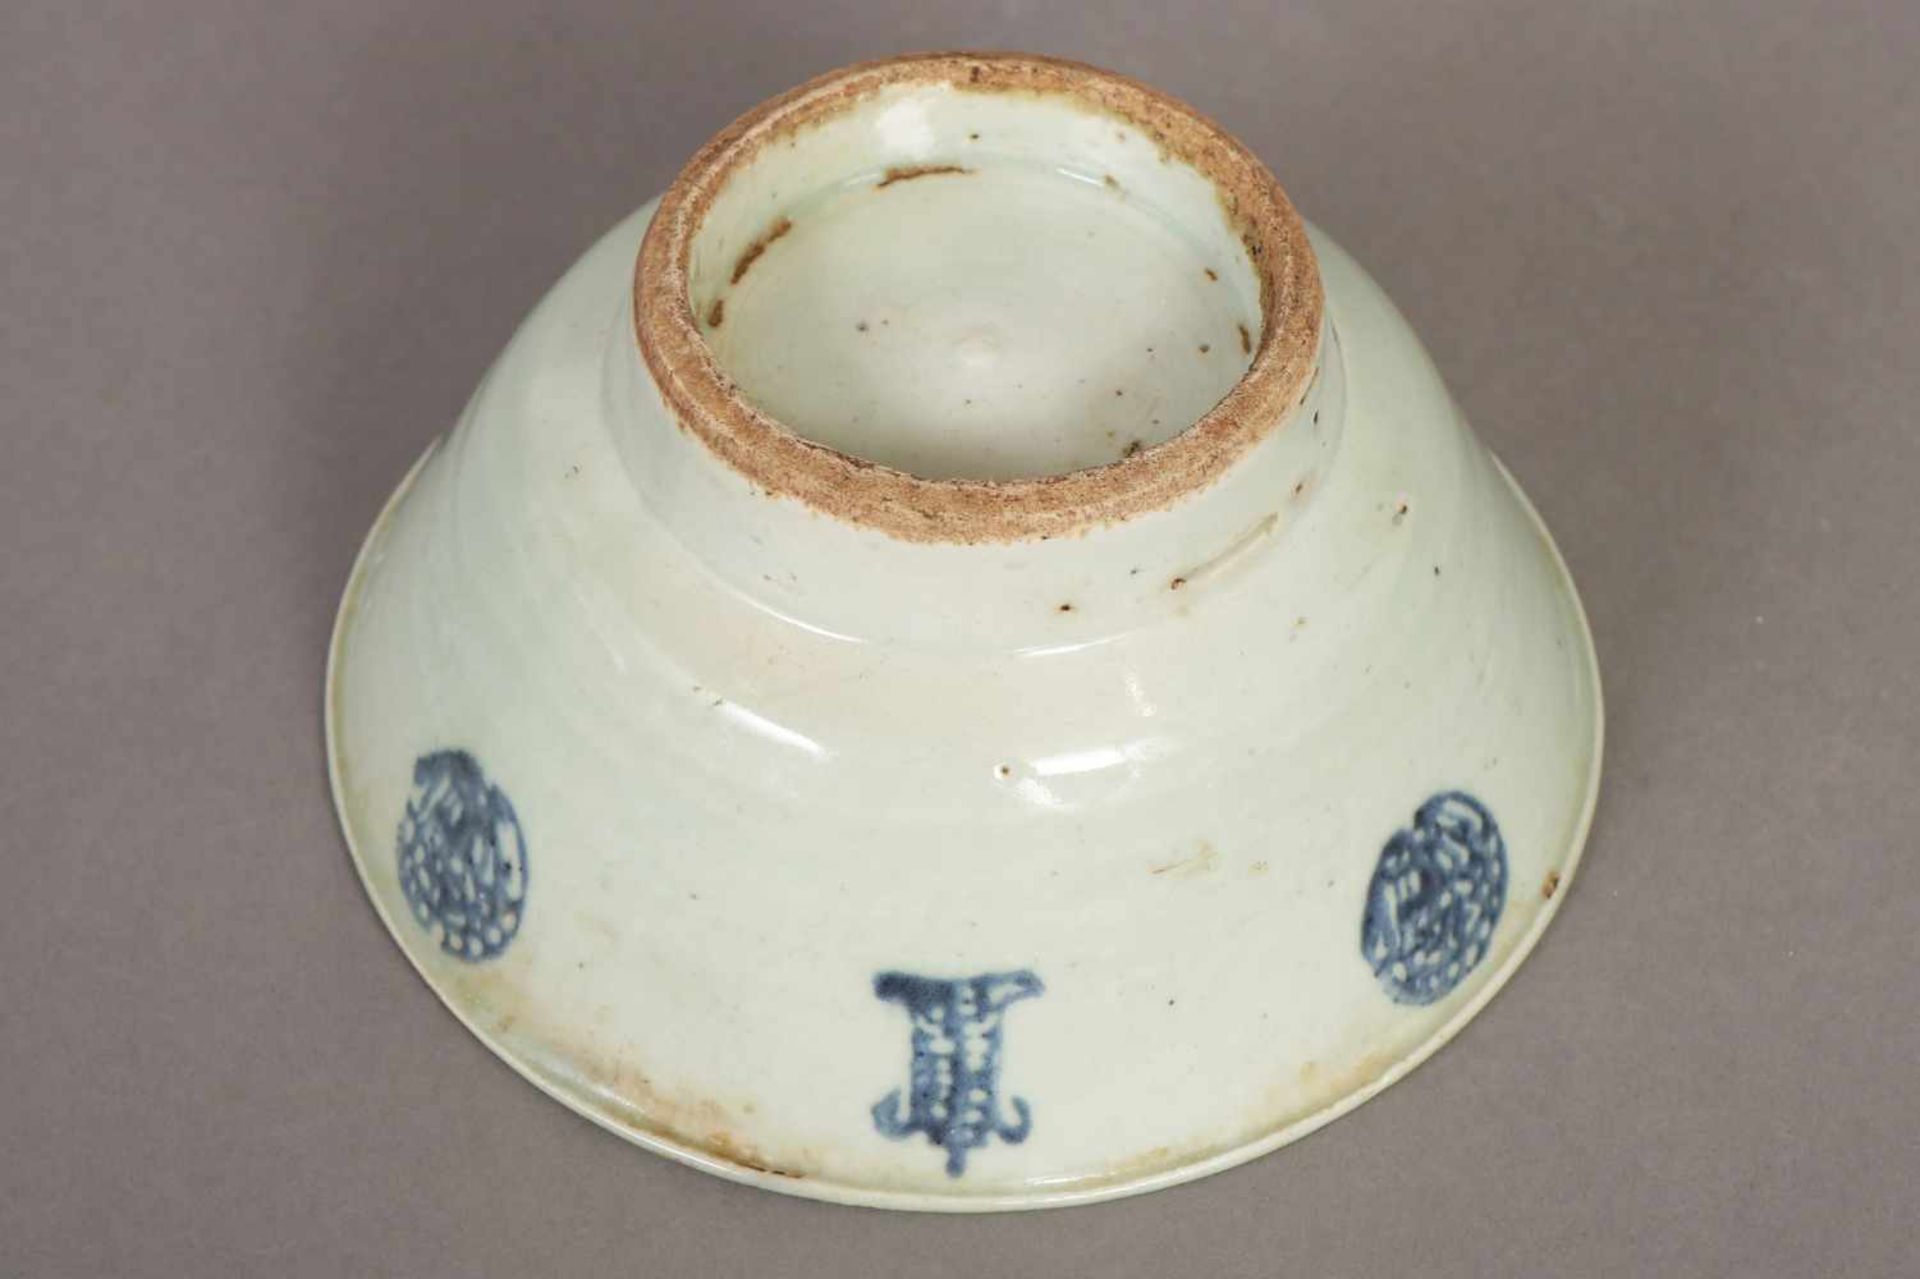 Schale im Stile Ming China, 17./18. Jhdt., Porzellan, leicht seladonfarben glasiert, ausgestellte - Image 2 of 2